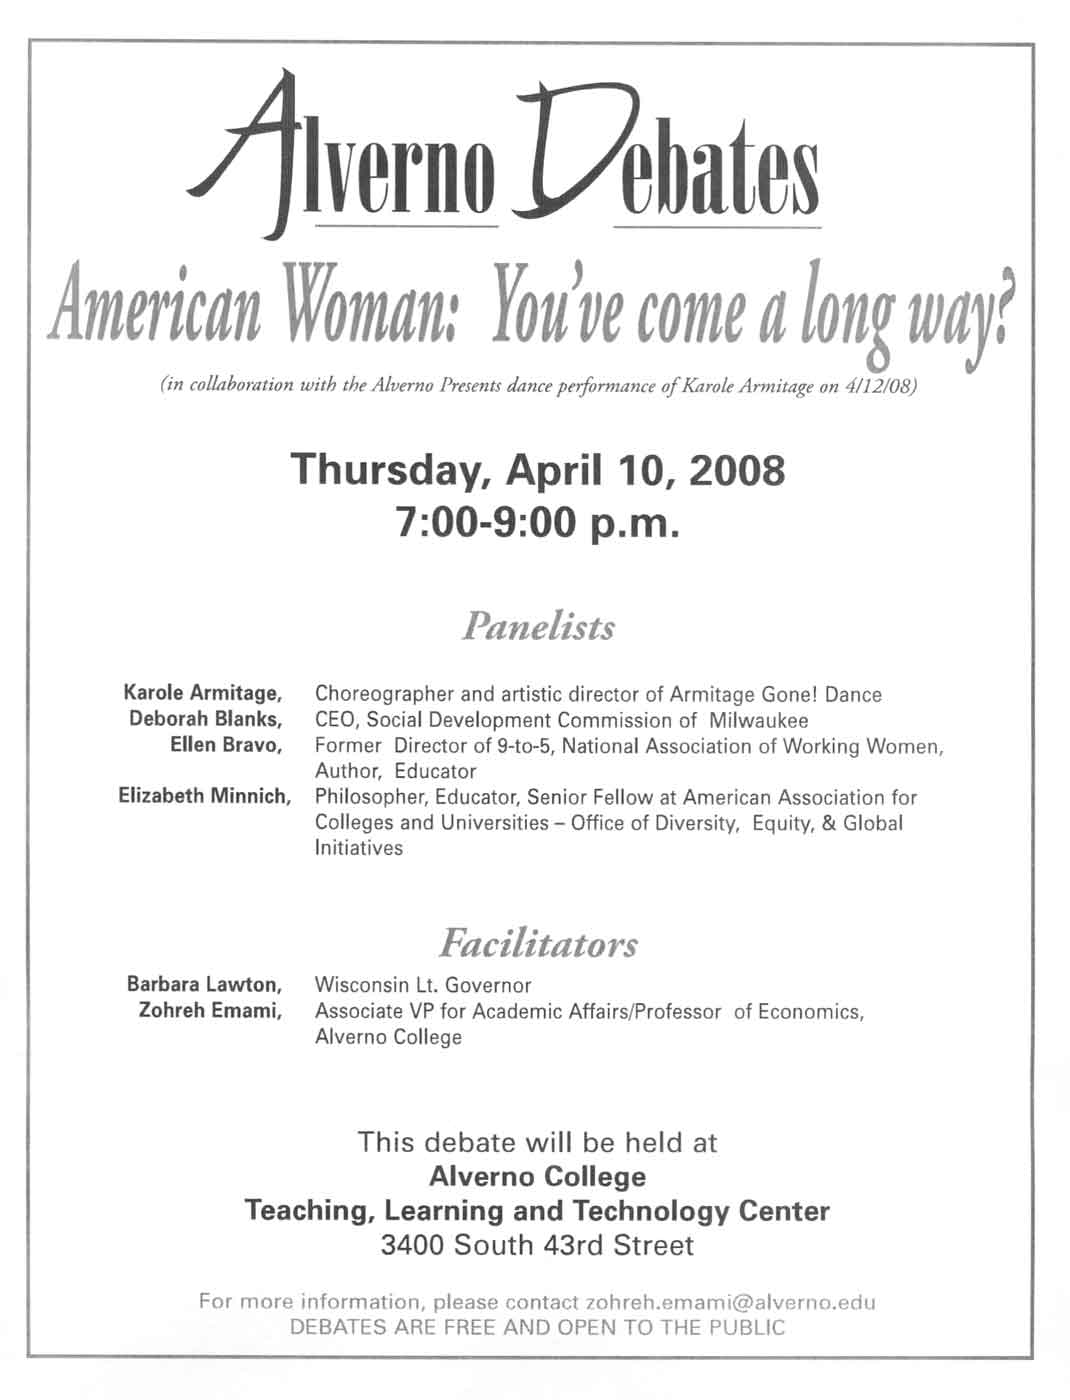 "Alverno Debates" flyer from April 2008